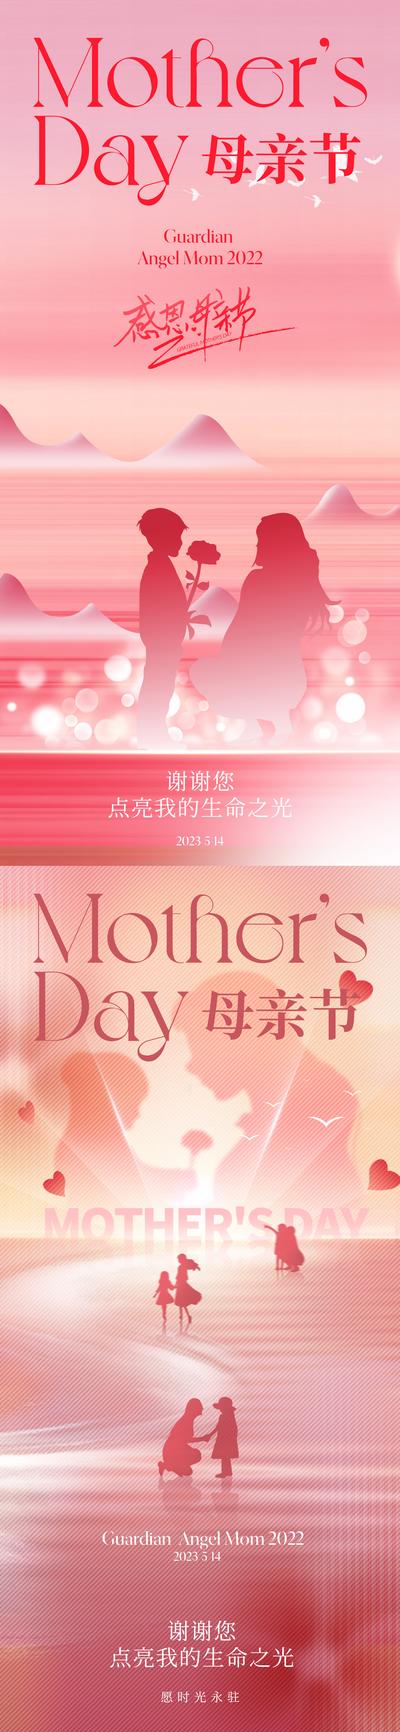 南门网 广告 海报 地产 母亲节 质感 美业 康乃馨 玫瑰 母子 剪影 母亲 妈妈 粉色 高级 温馨 温情